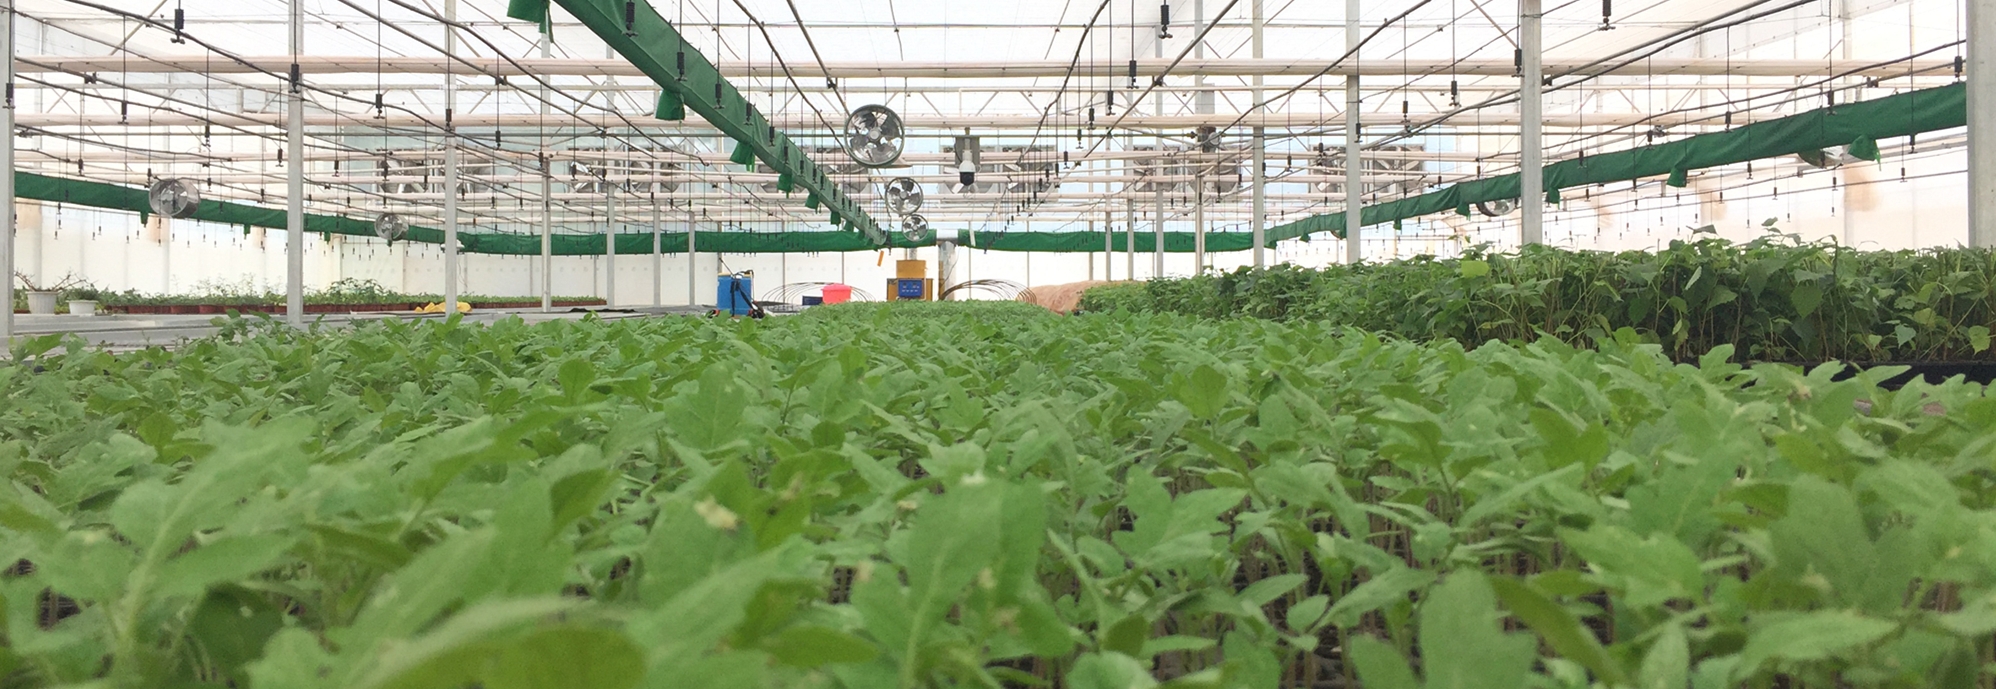 苍松温室--云南农业大学滇台中心--物联网自控薄膜温室及灌溉